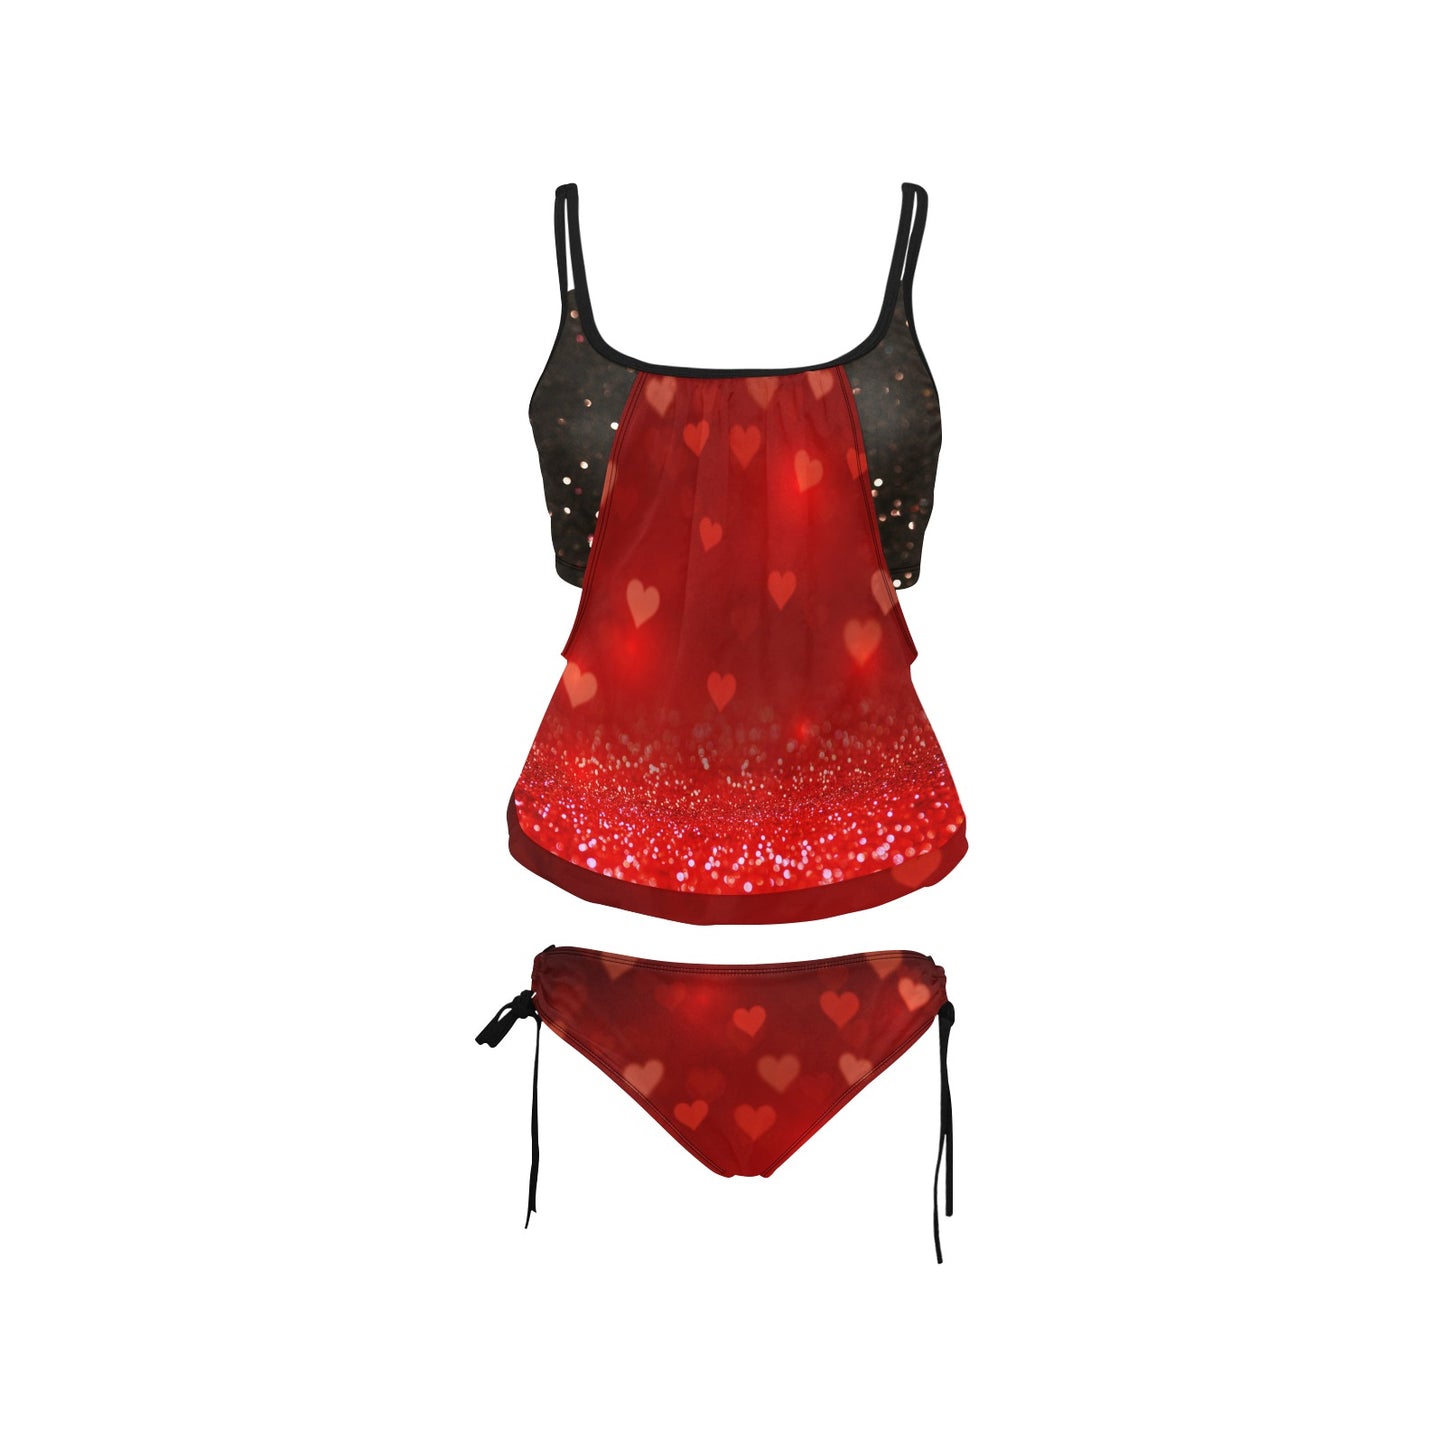 Valentine Hearts Women's Tankini Swimsuit Set